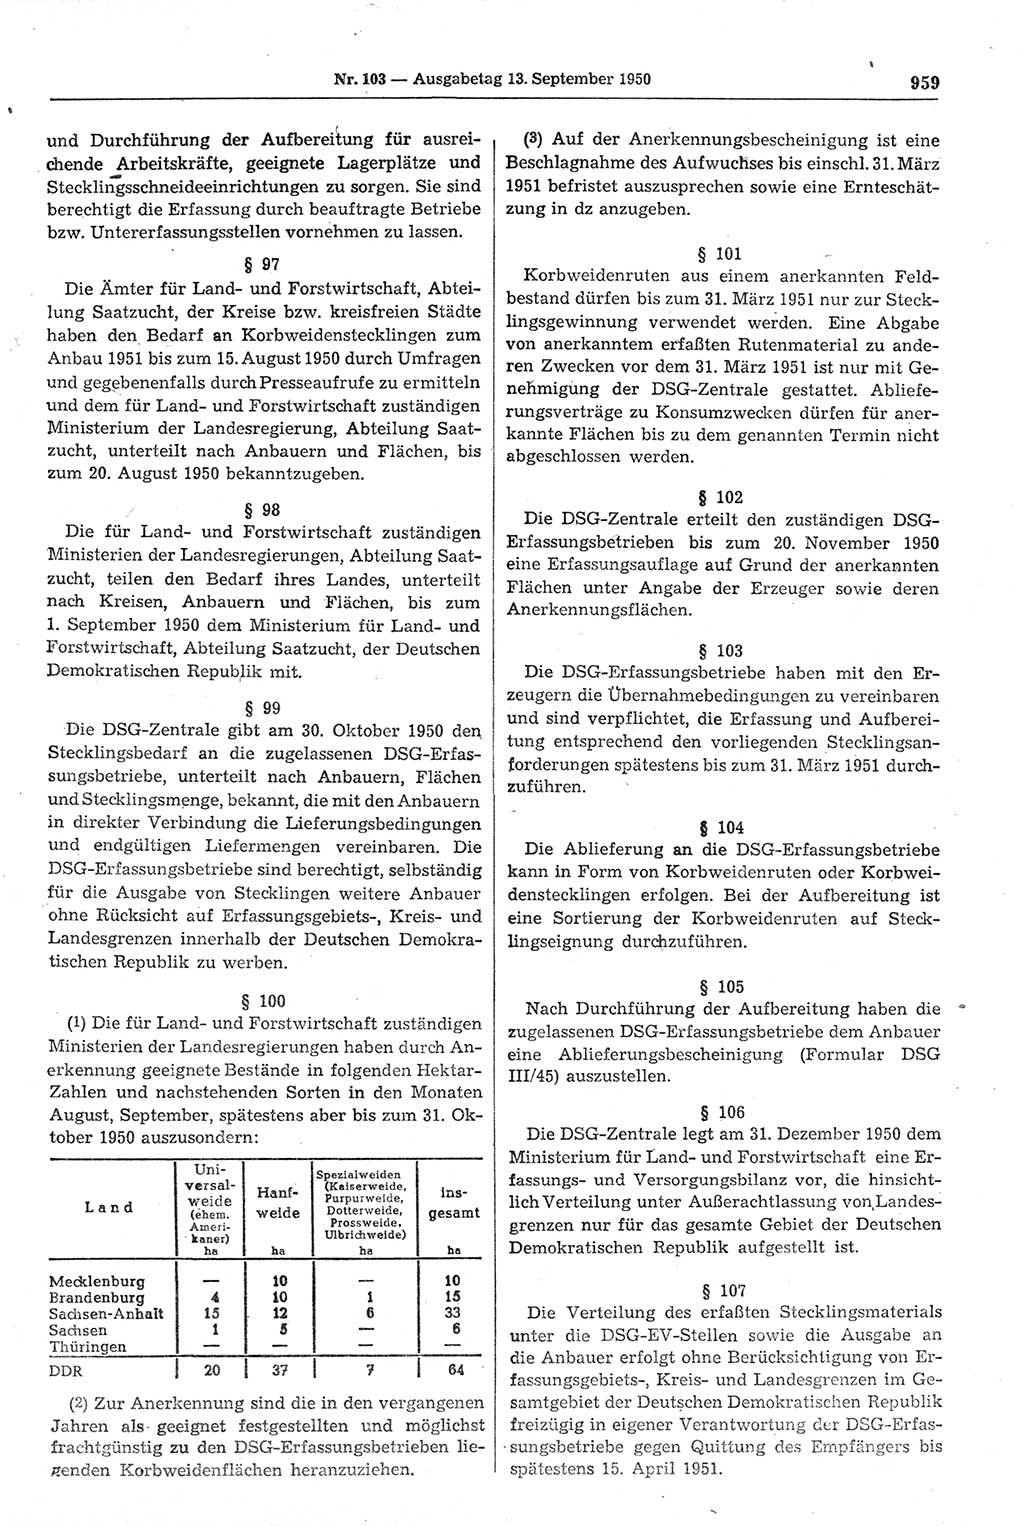 Gesetzblatt (GBl.) der Deutschen Demokratischen Republik (DDR) 1950, Seite 959 (GBl. DDR 1950, S. 959)